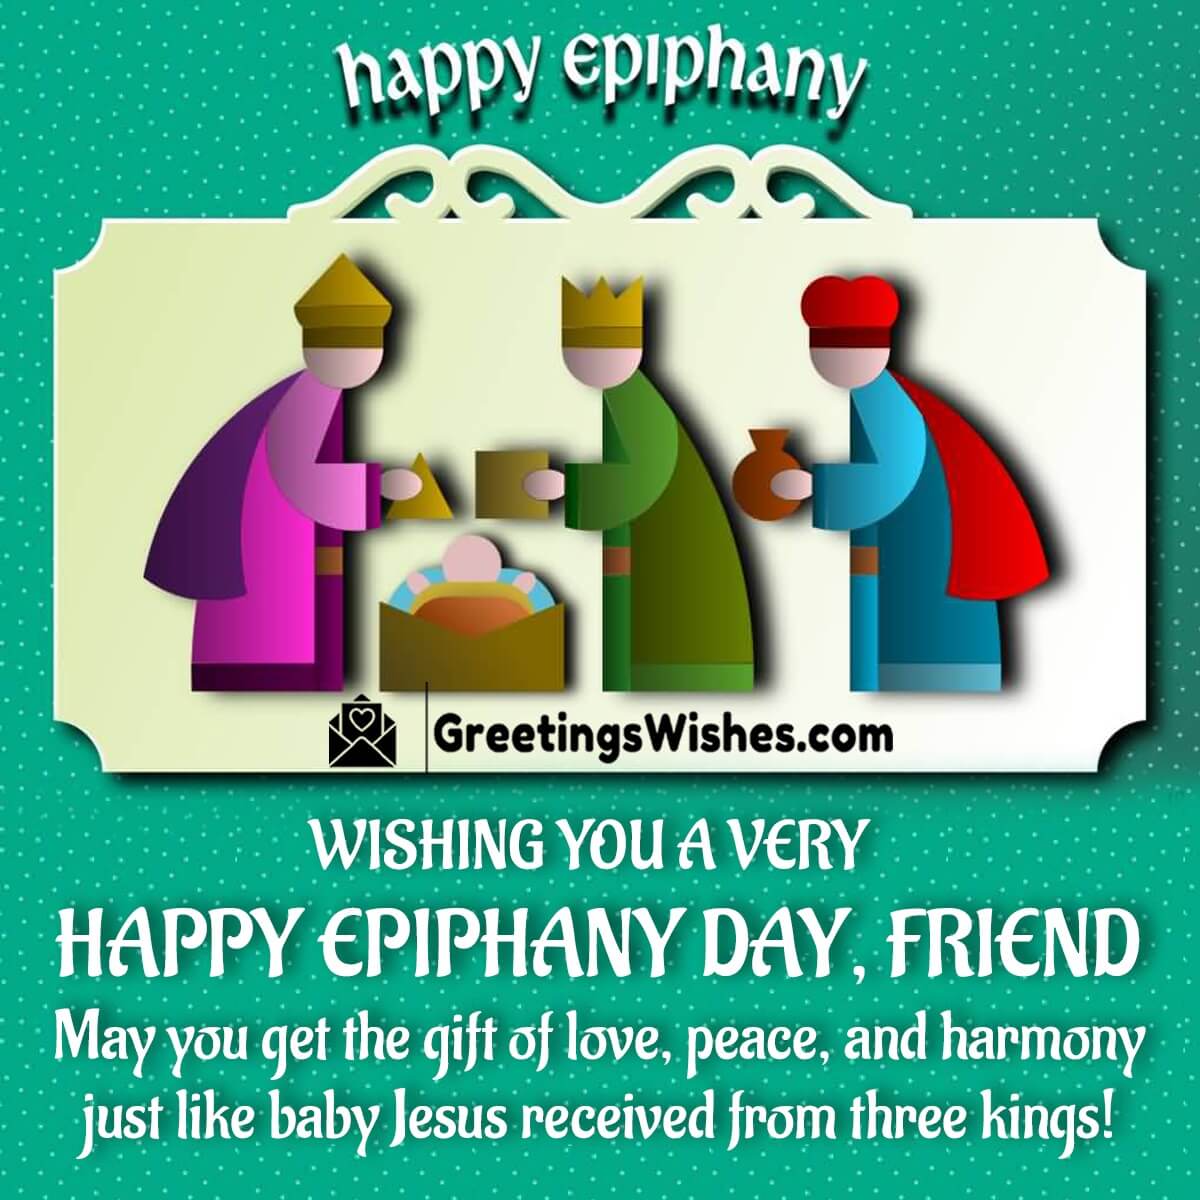 Happy Epiphany Day Friend